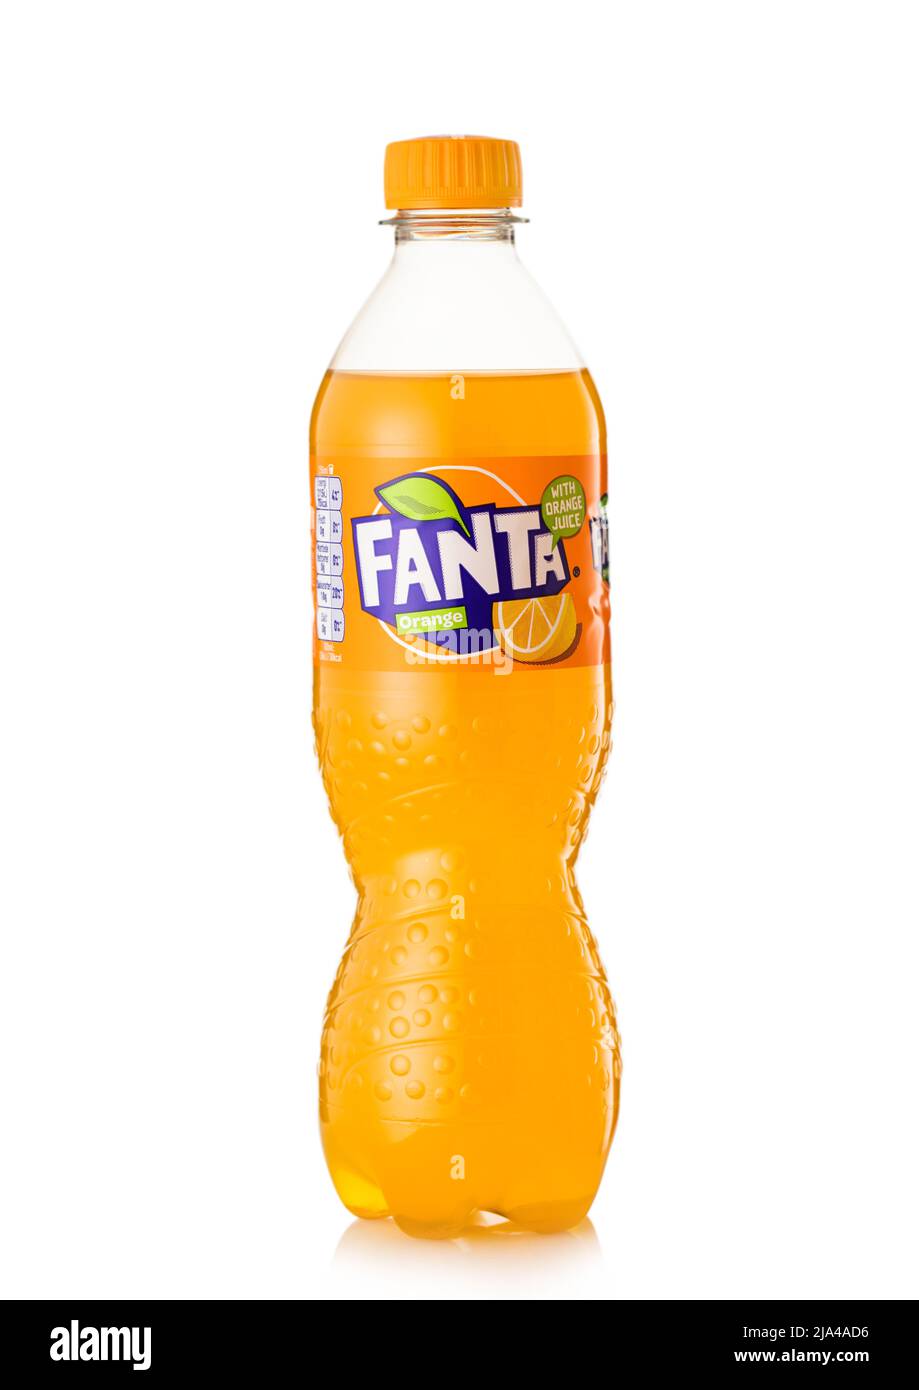 LONDON,UK - MAY 24, 2022: Plastic bottle of Fanta original orange soda on white. Stock Photo